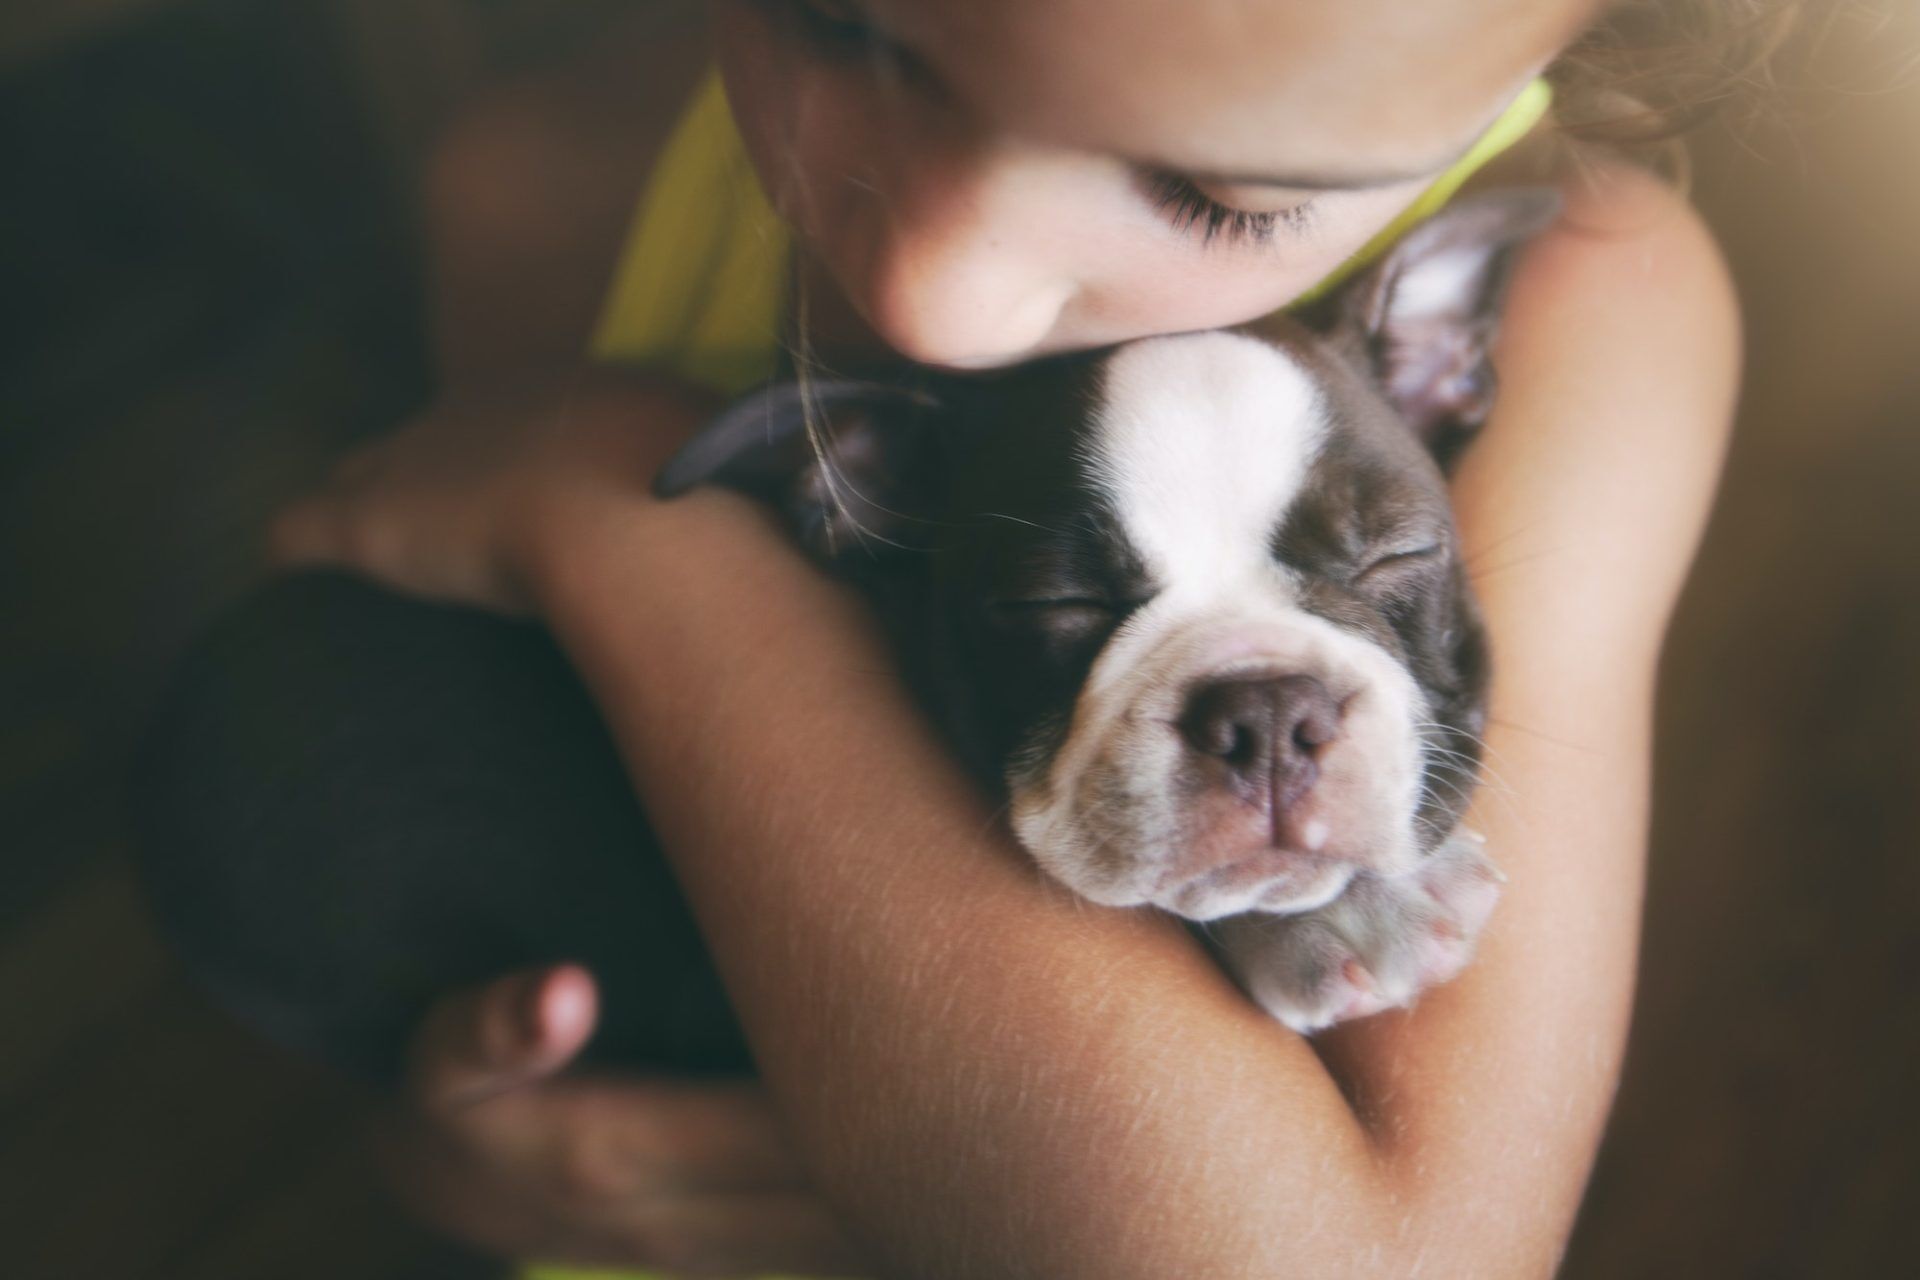 Girl hugging puppy